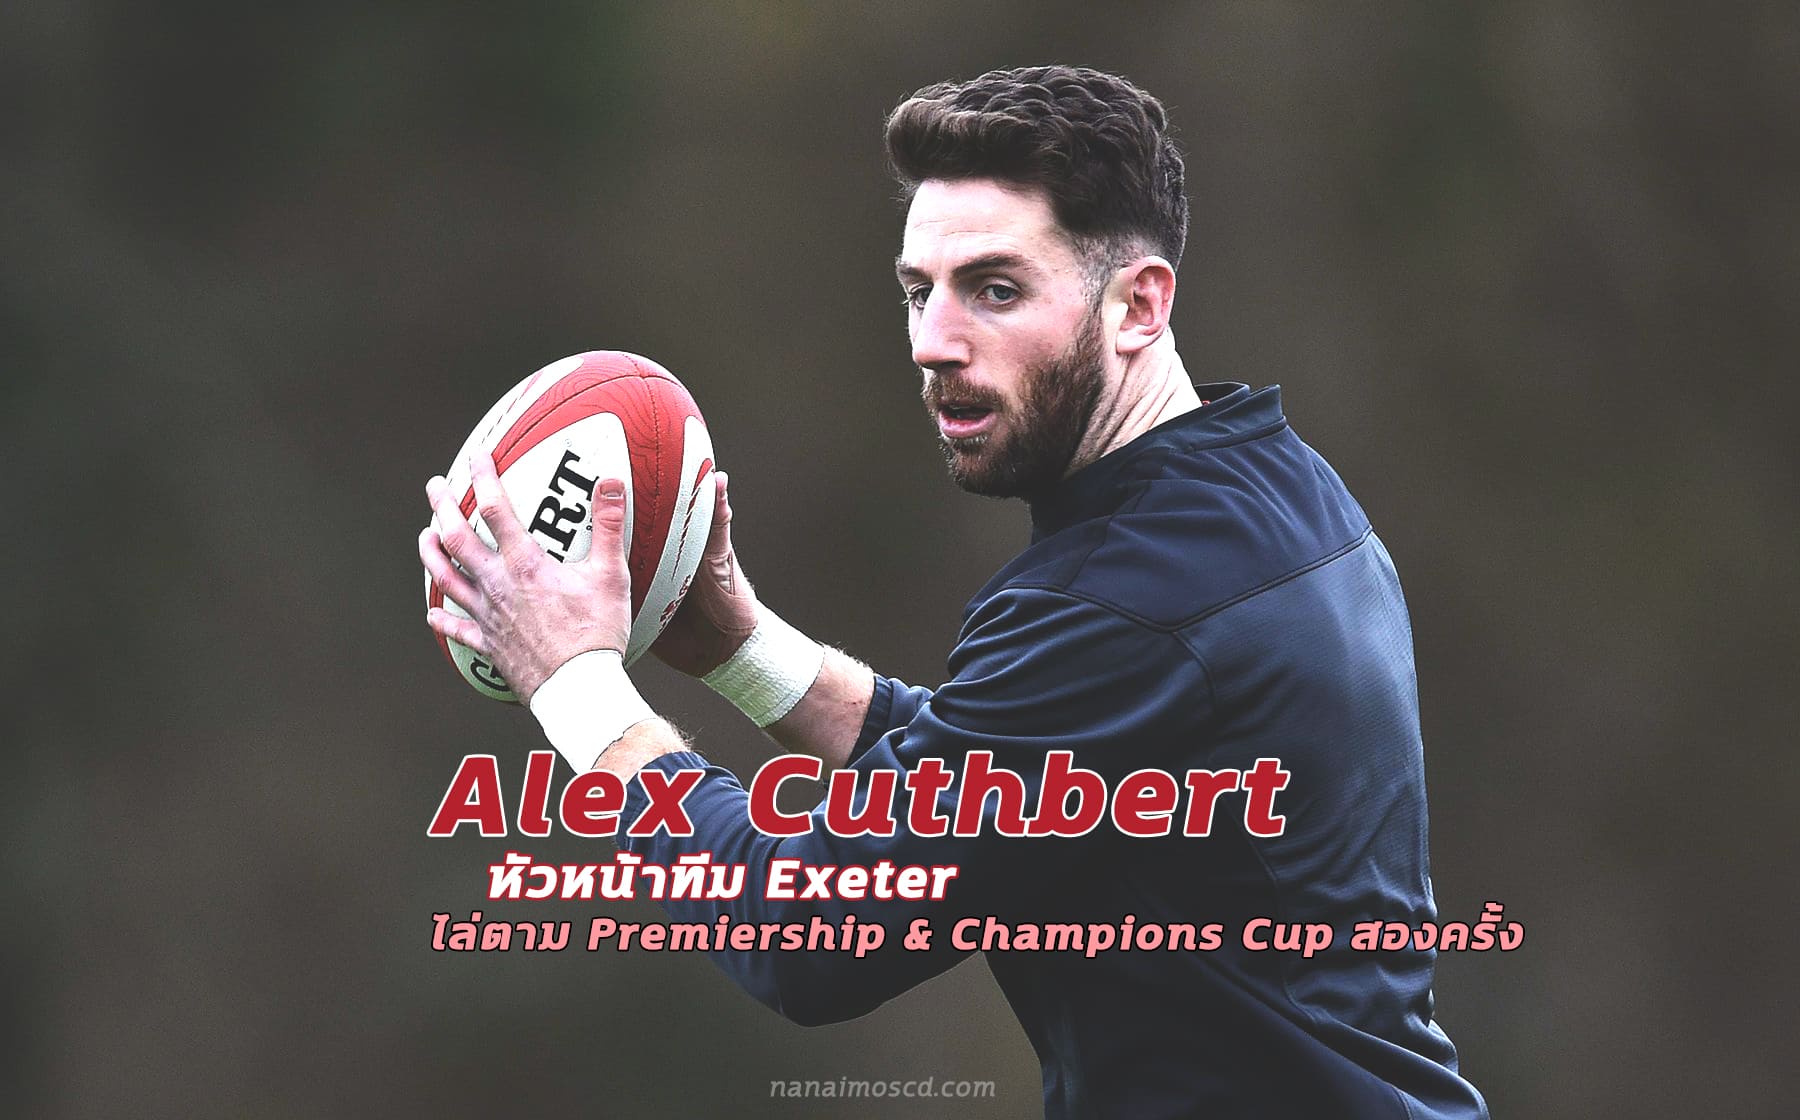 Alex Cuthbert